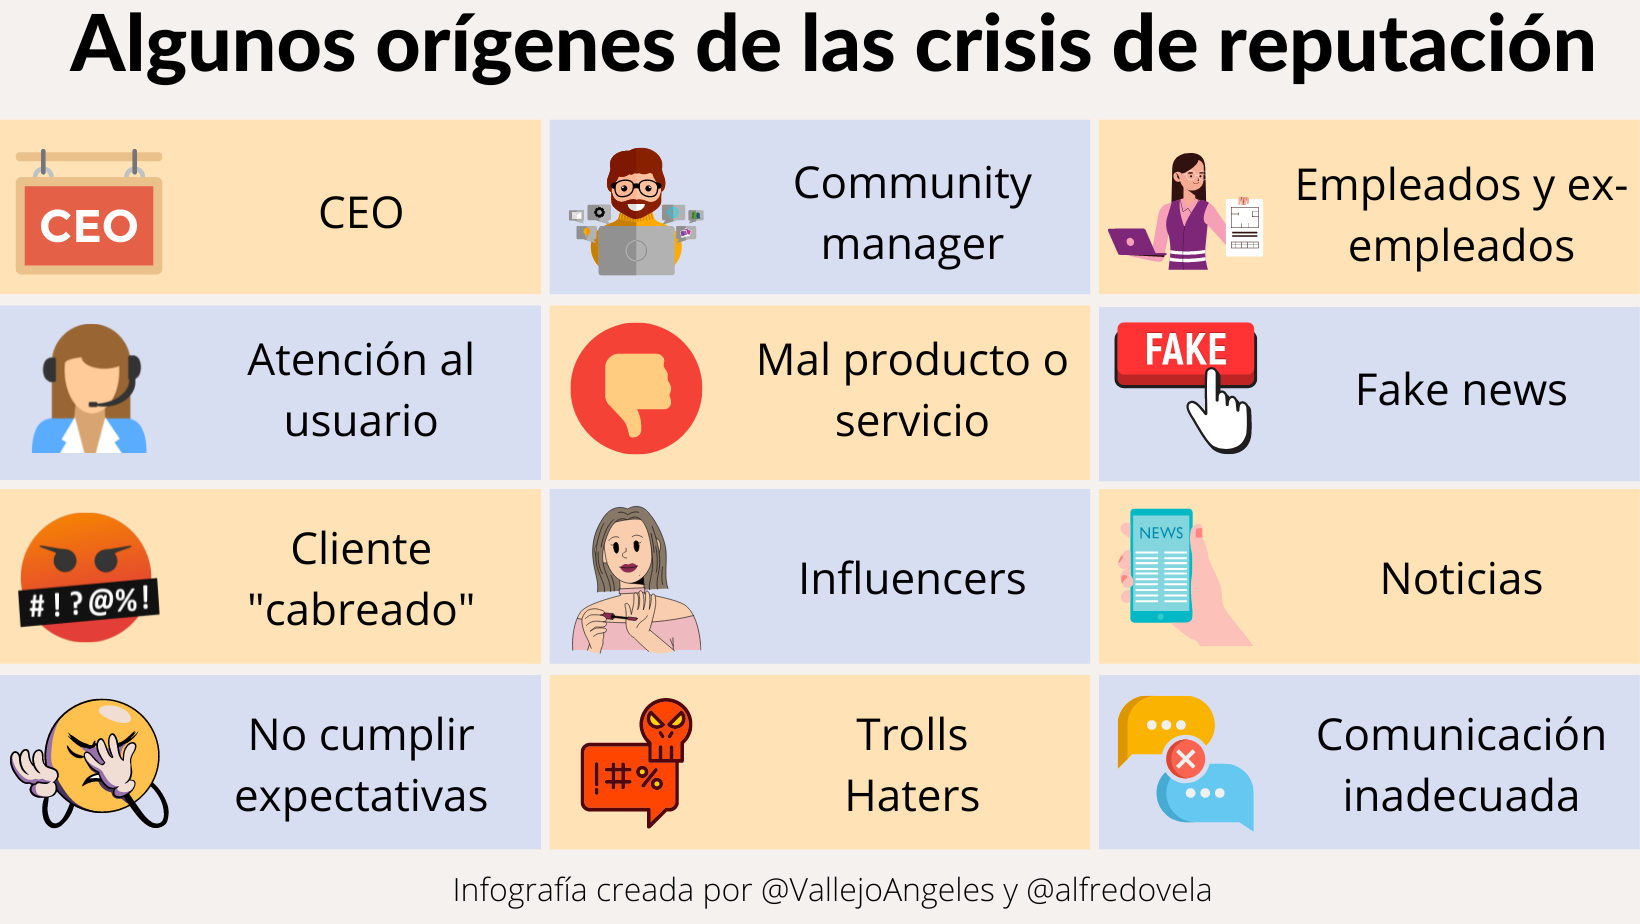 Orígenes de las crisis de reputación #infografia #marketing #rrhh #comunicación